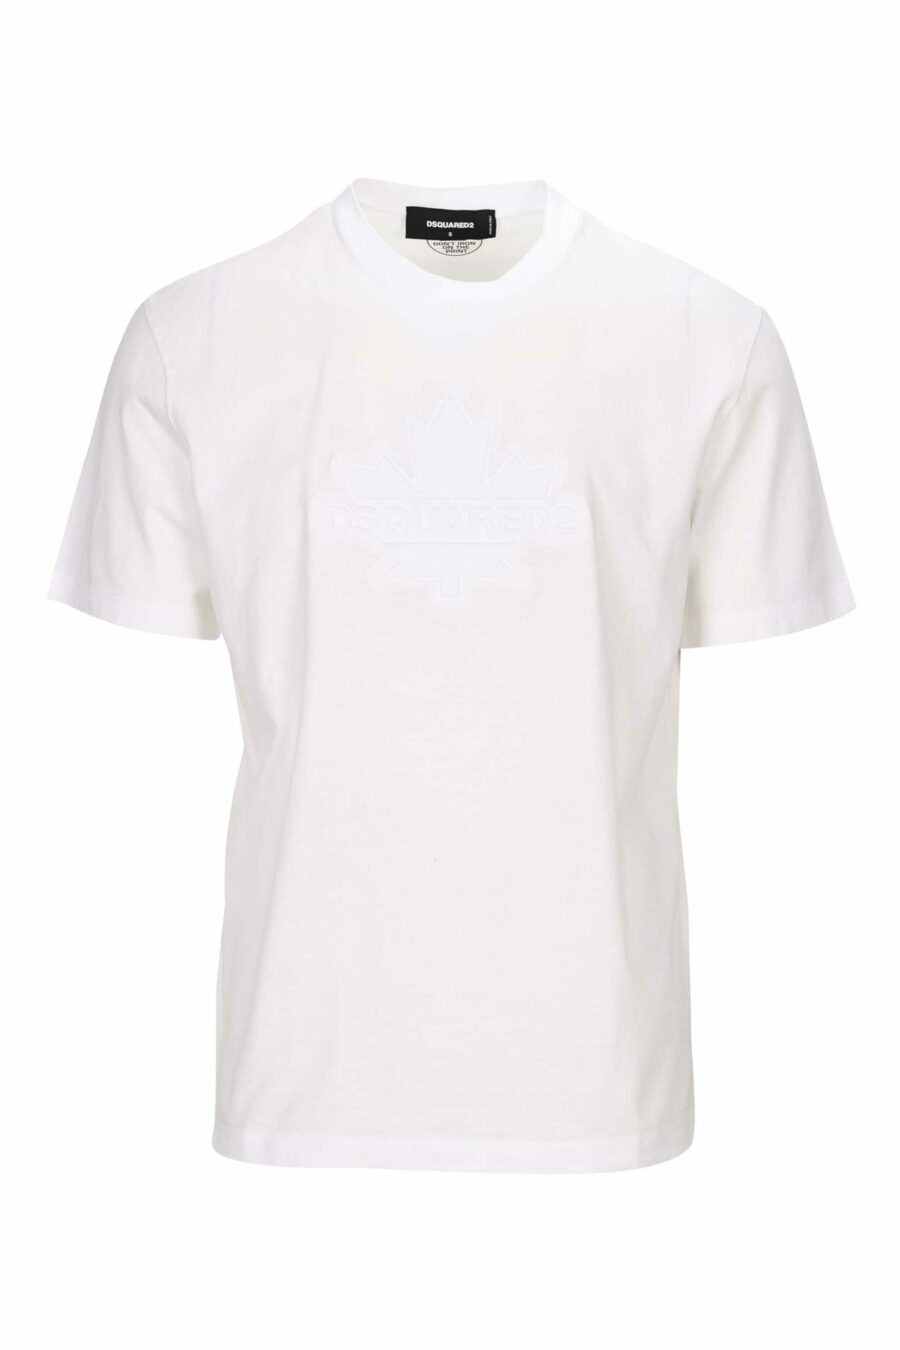 Weißes T-Shirt mit einfarbig geprägtem Blatt-Maxilogo - 8054148265830 skaliert